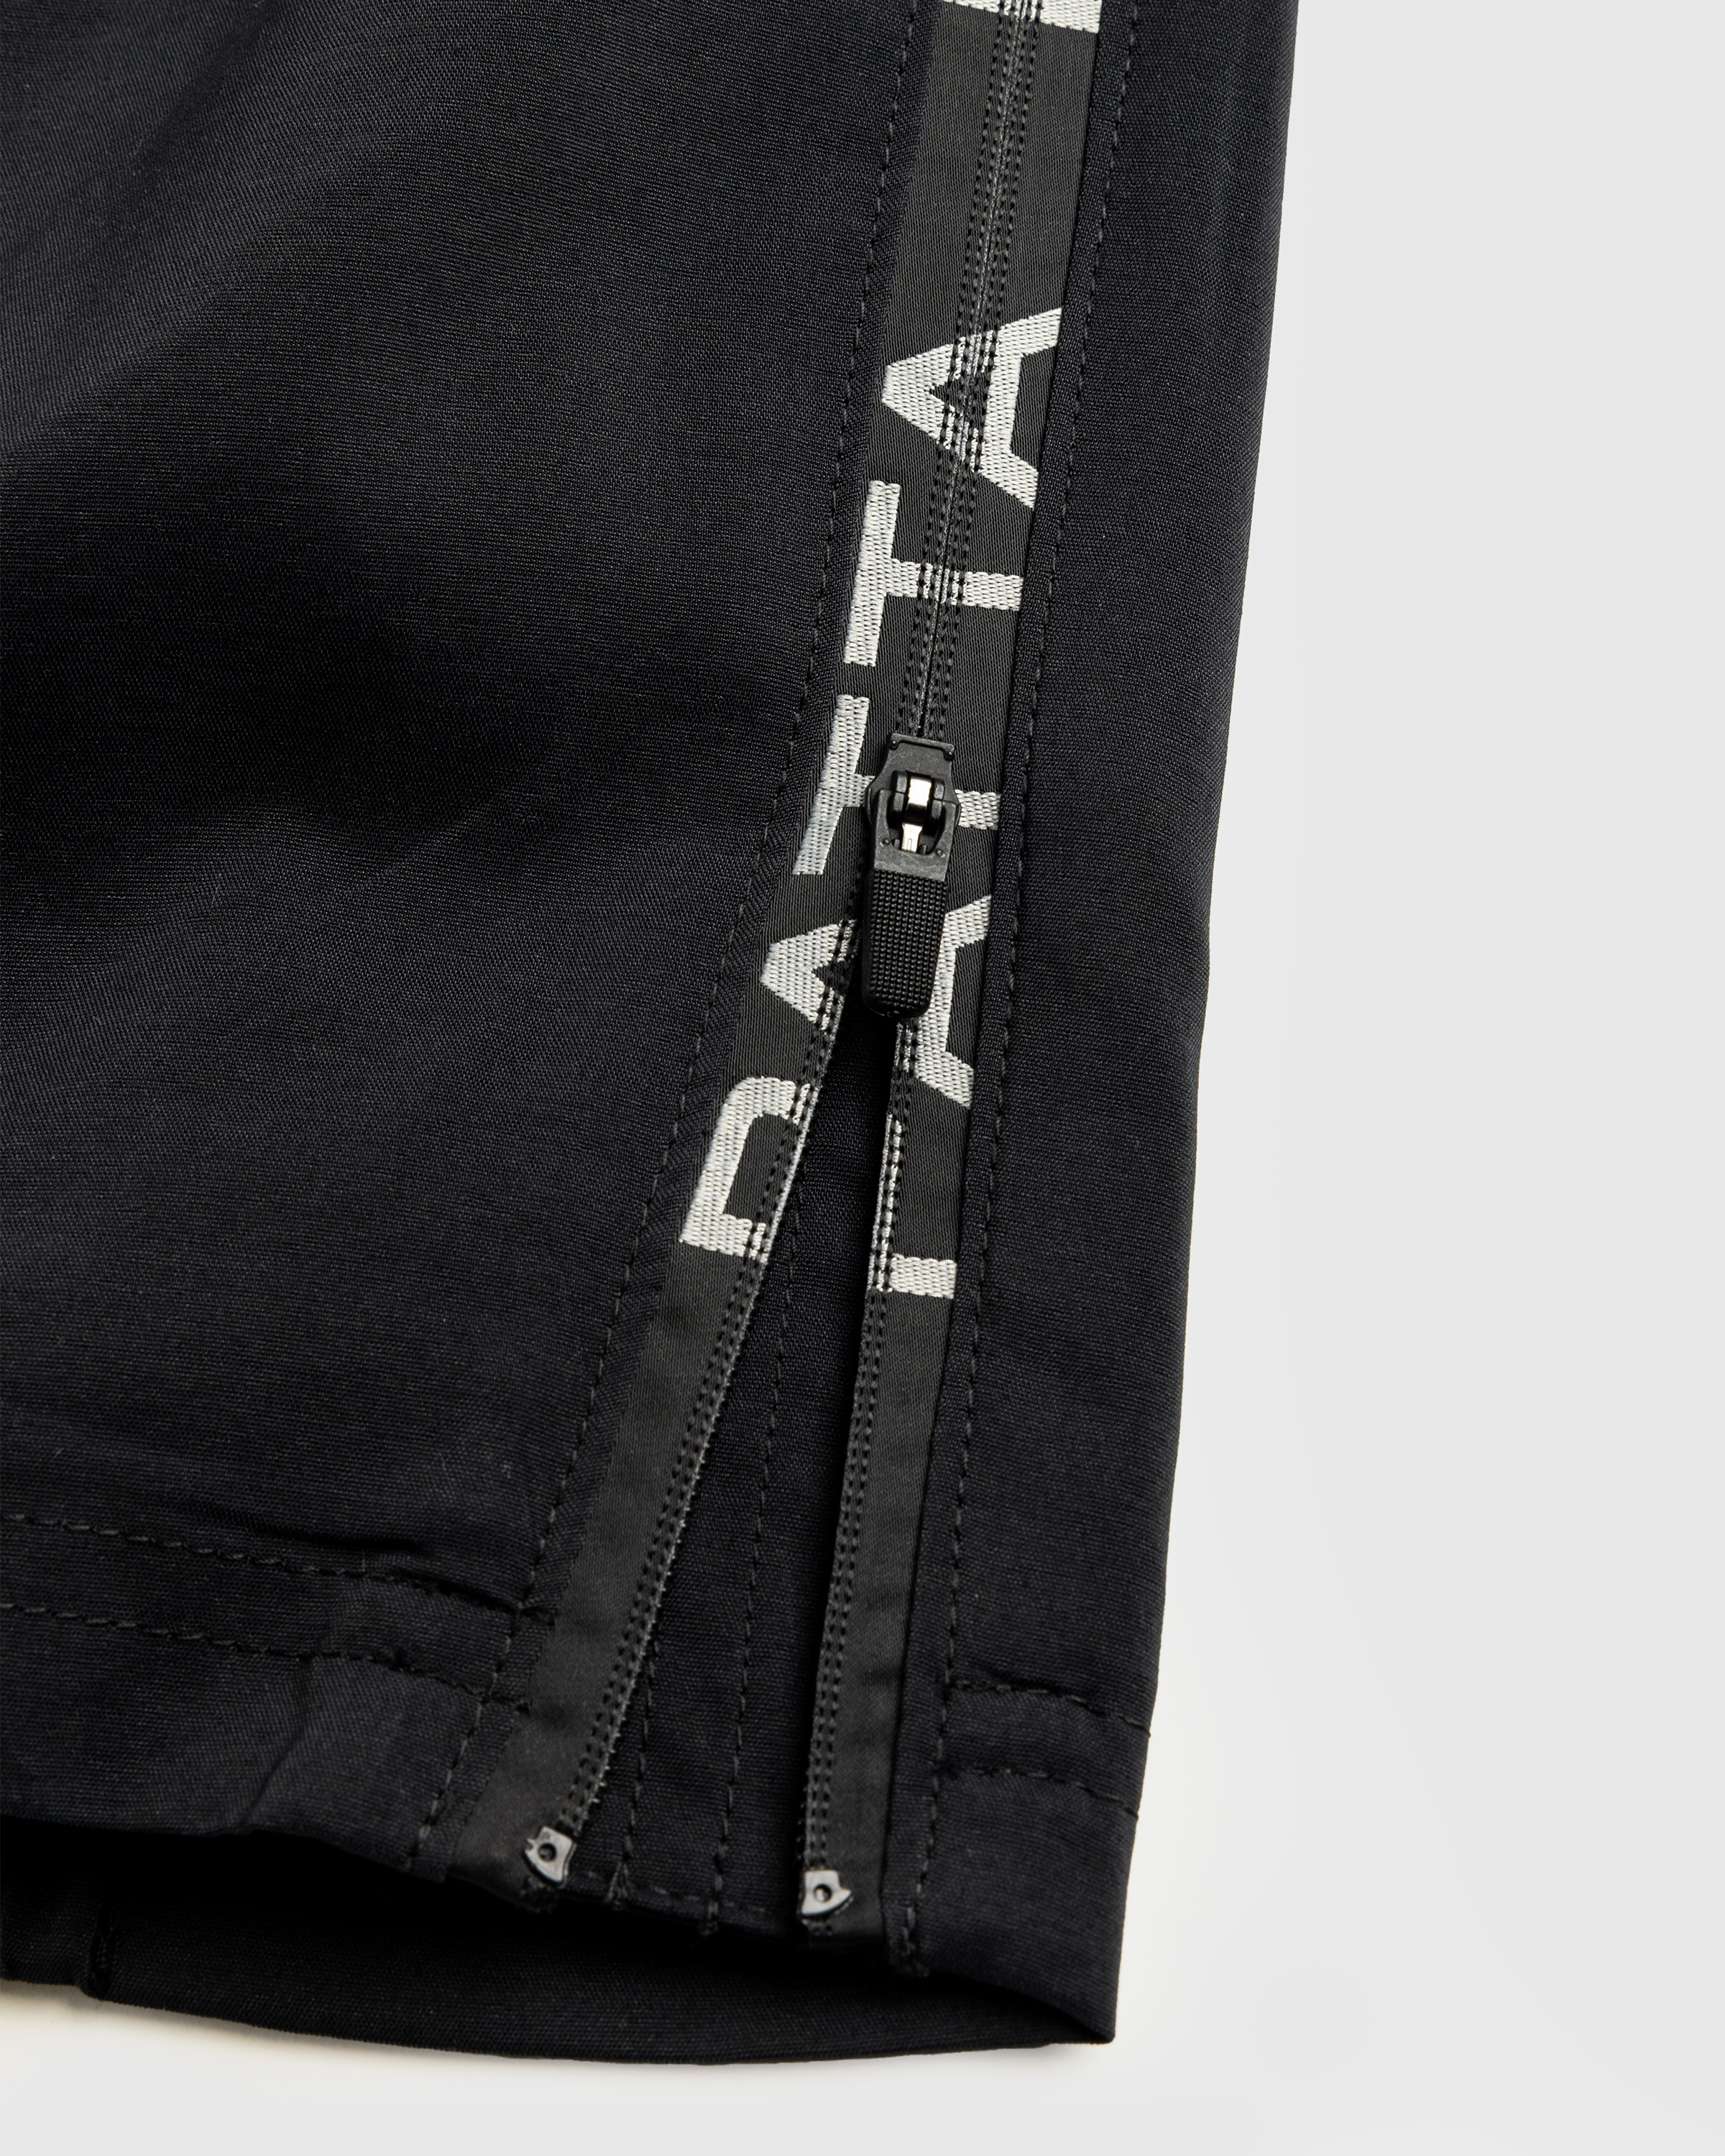 Nike x Patta – Men's Track Pants Black - Track Pants - Black - Image 9